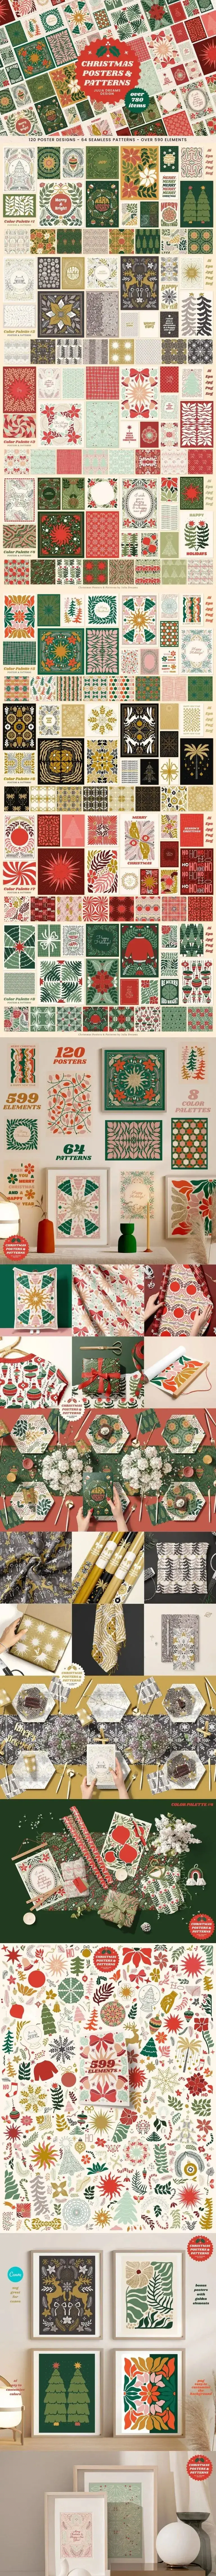 复古圣诞节节日活动海报图案元素纹理素材包-爱设计爱分享c